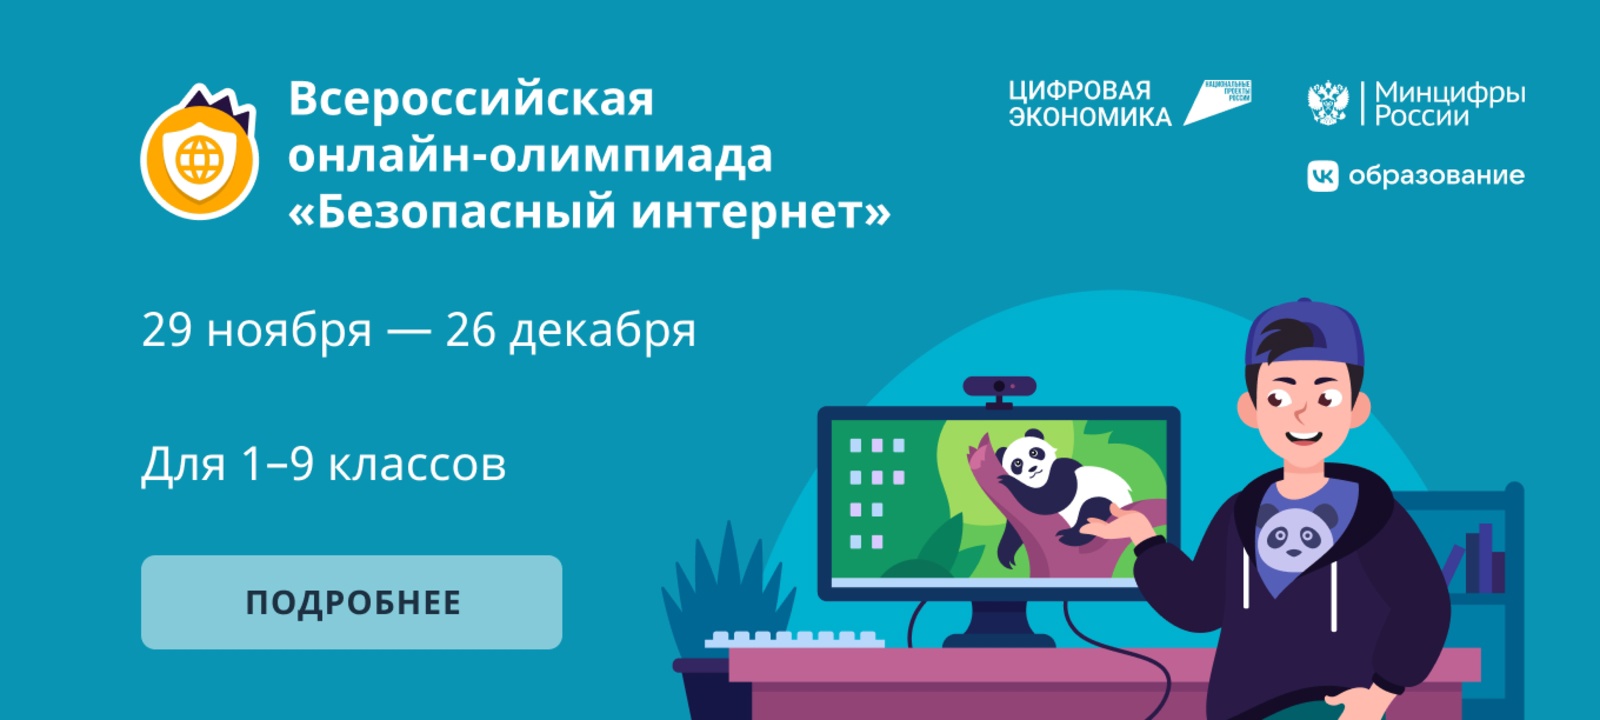 На Брянщине стартовала онлайн-олимпиада для школьников «Безопасный интернет»